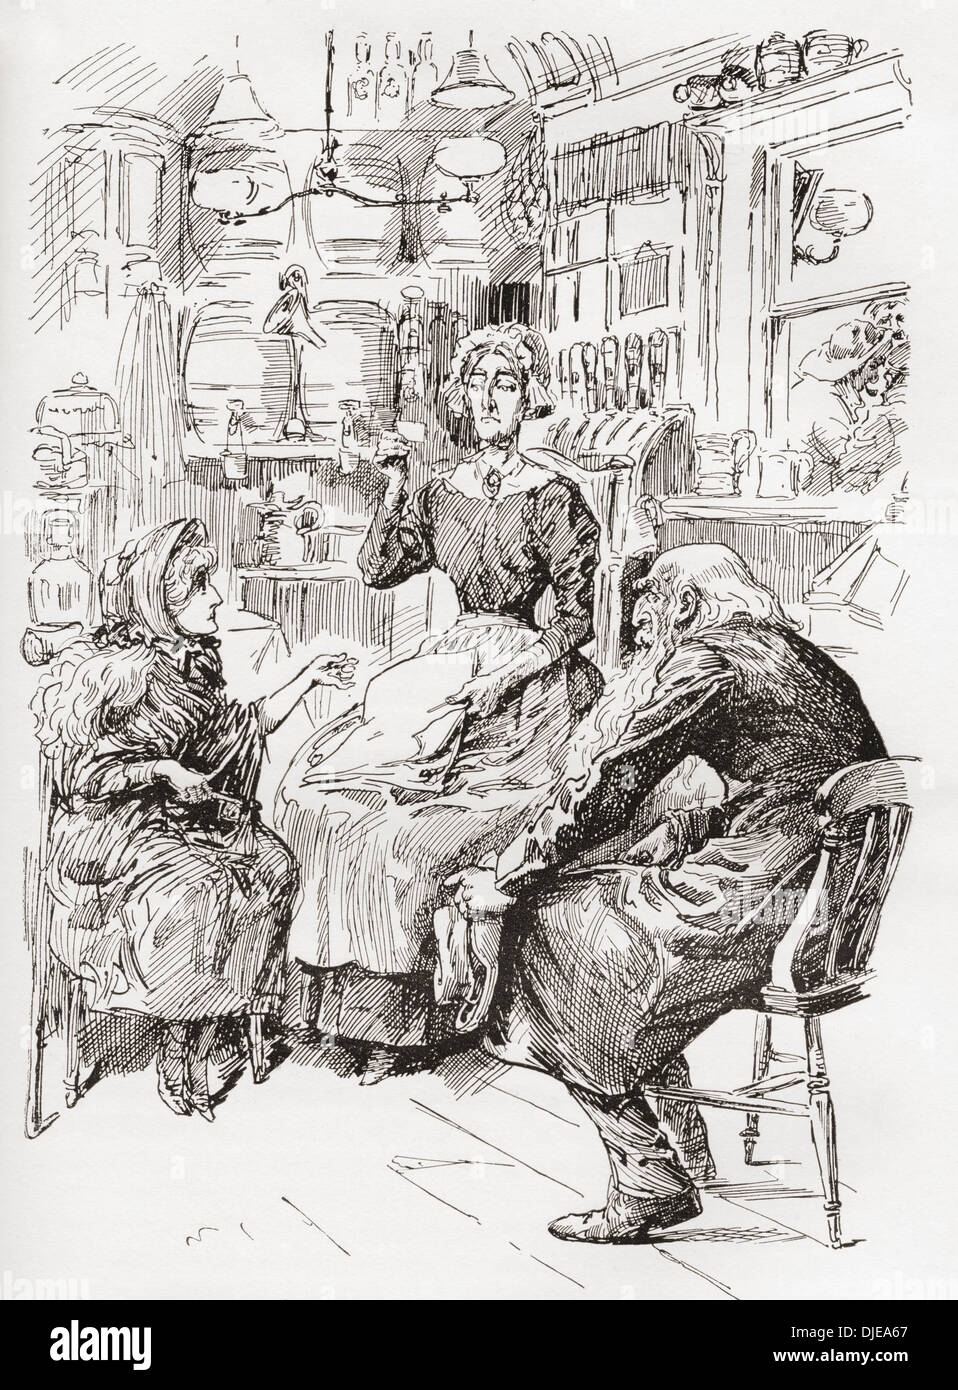 El Sr. Riah & Miss Wren a las seis becas Jolly cargadores. Ilustración por Harry Furniss de la novela de Charles Dickens nuestro amigo mutuo Foto de stock